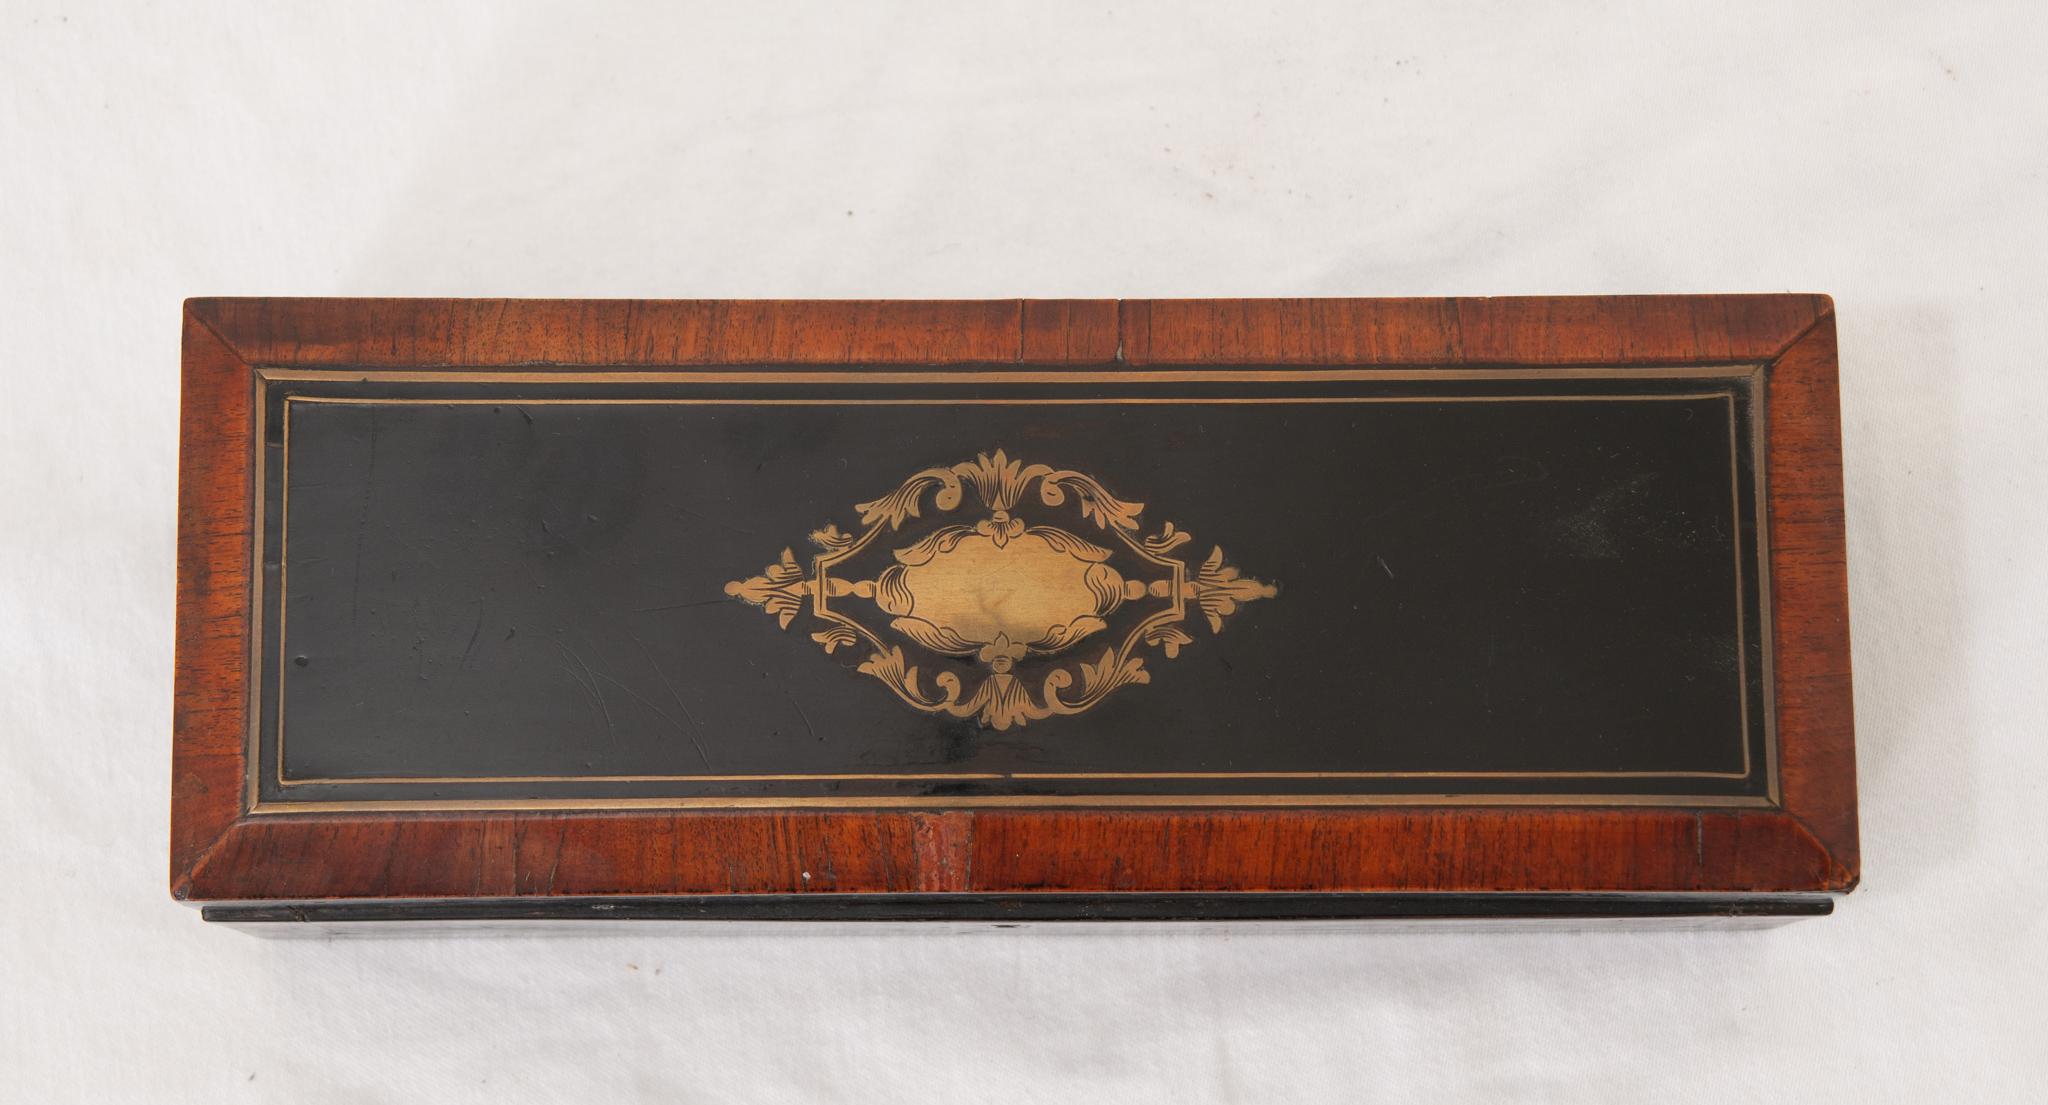 Ein Handschuhfach aus dem 19. Jahrhundert, hergestellt in Frankreich aus ebonisiertem Mahagoni. Diese Schachtel hat eine Klappe, die einen leichten Zugang zum Inhalt ermöglicht, einschließlich eines mit Seide ausgekleideten Innenraums. Schauen Sie